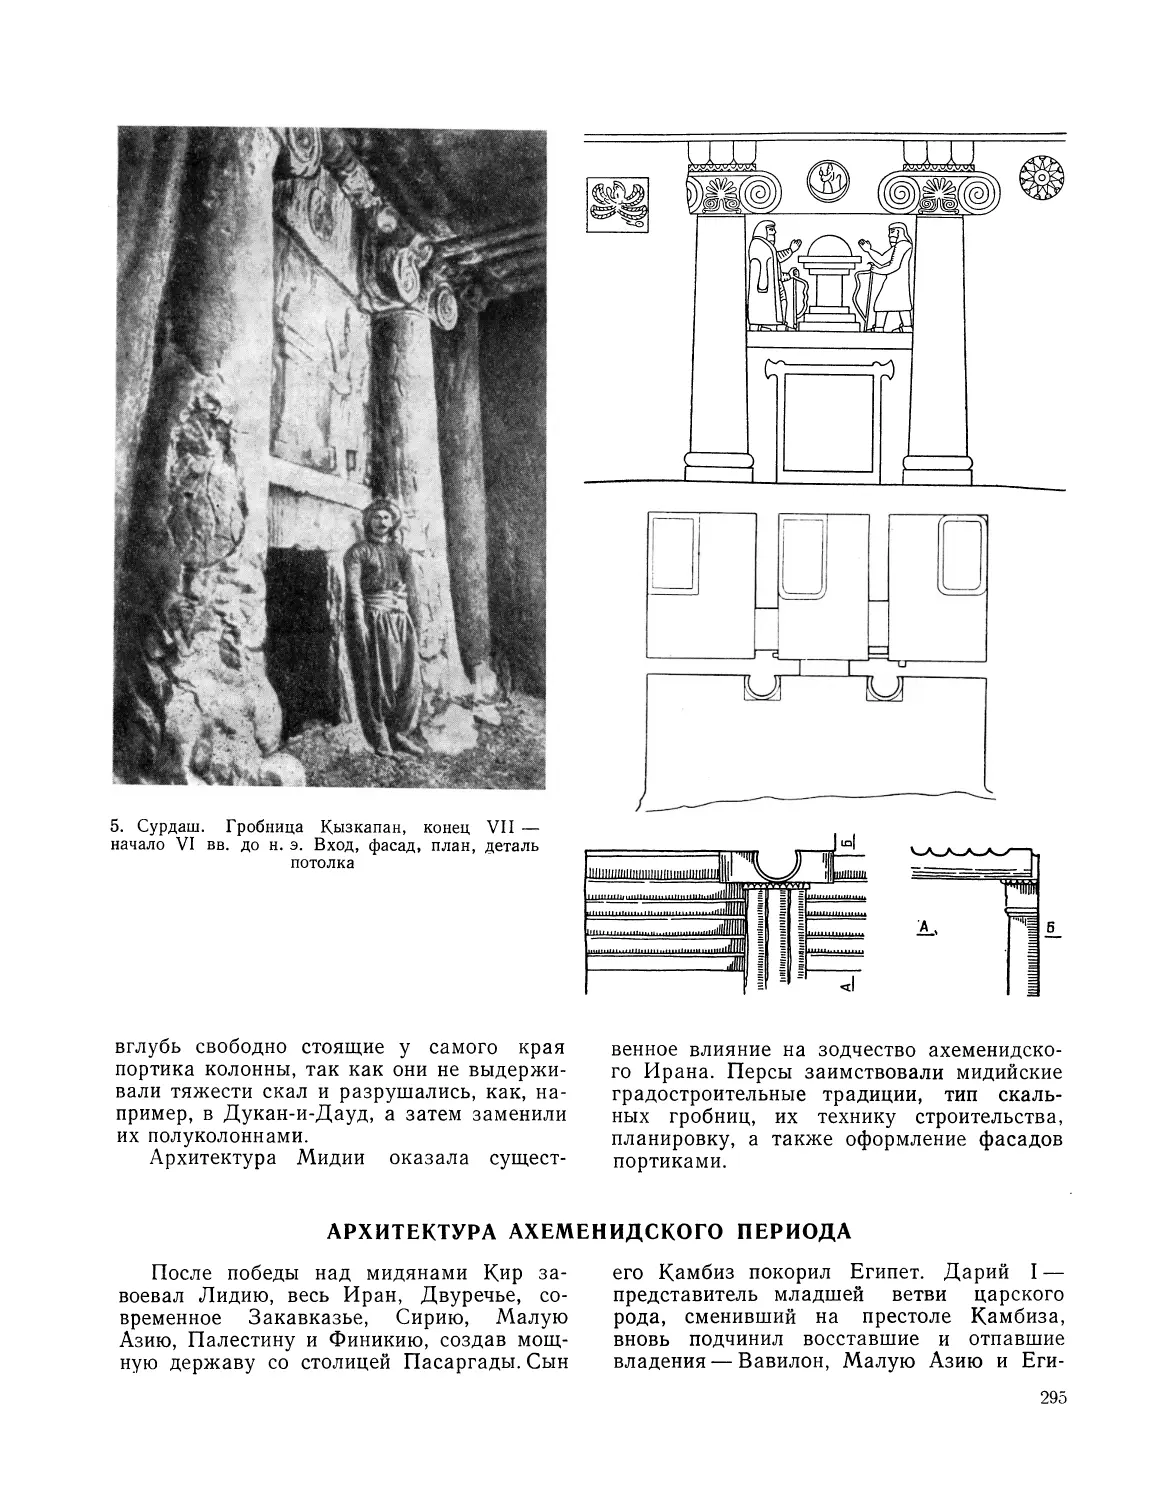 Архитектура ахеменидского периода. И.Ф. Бородина